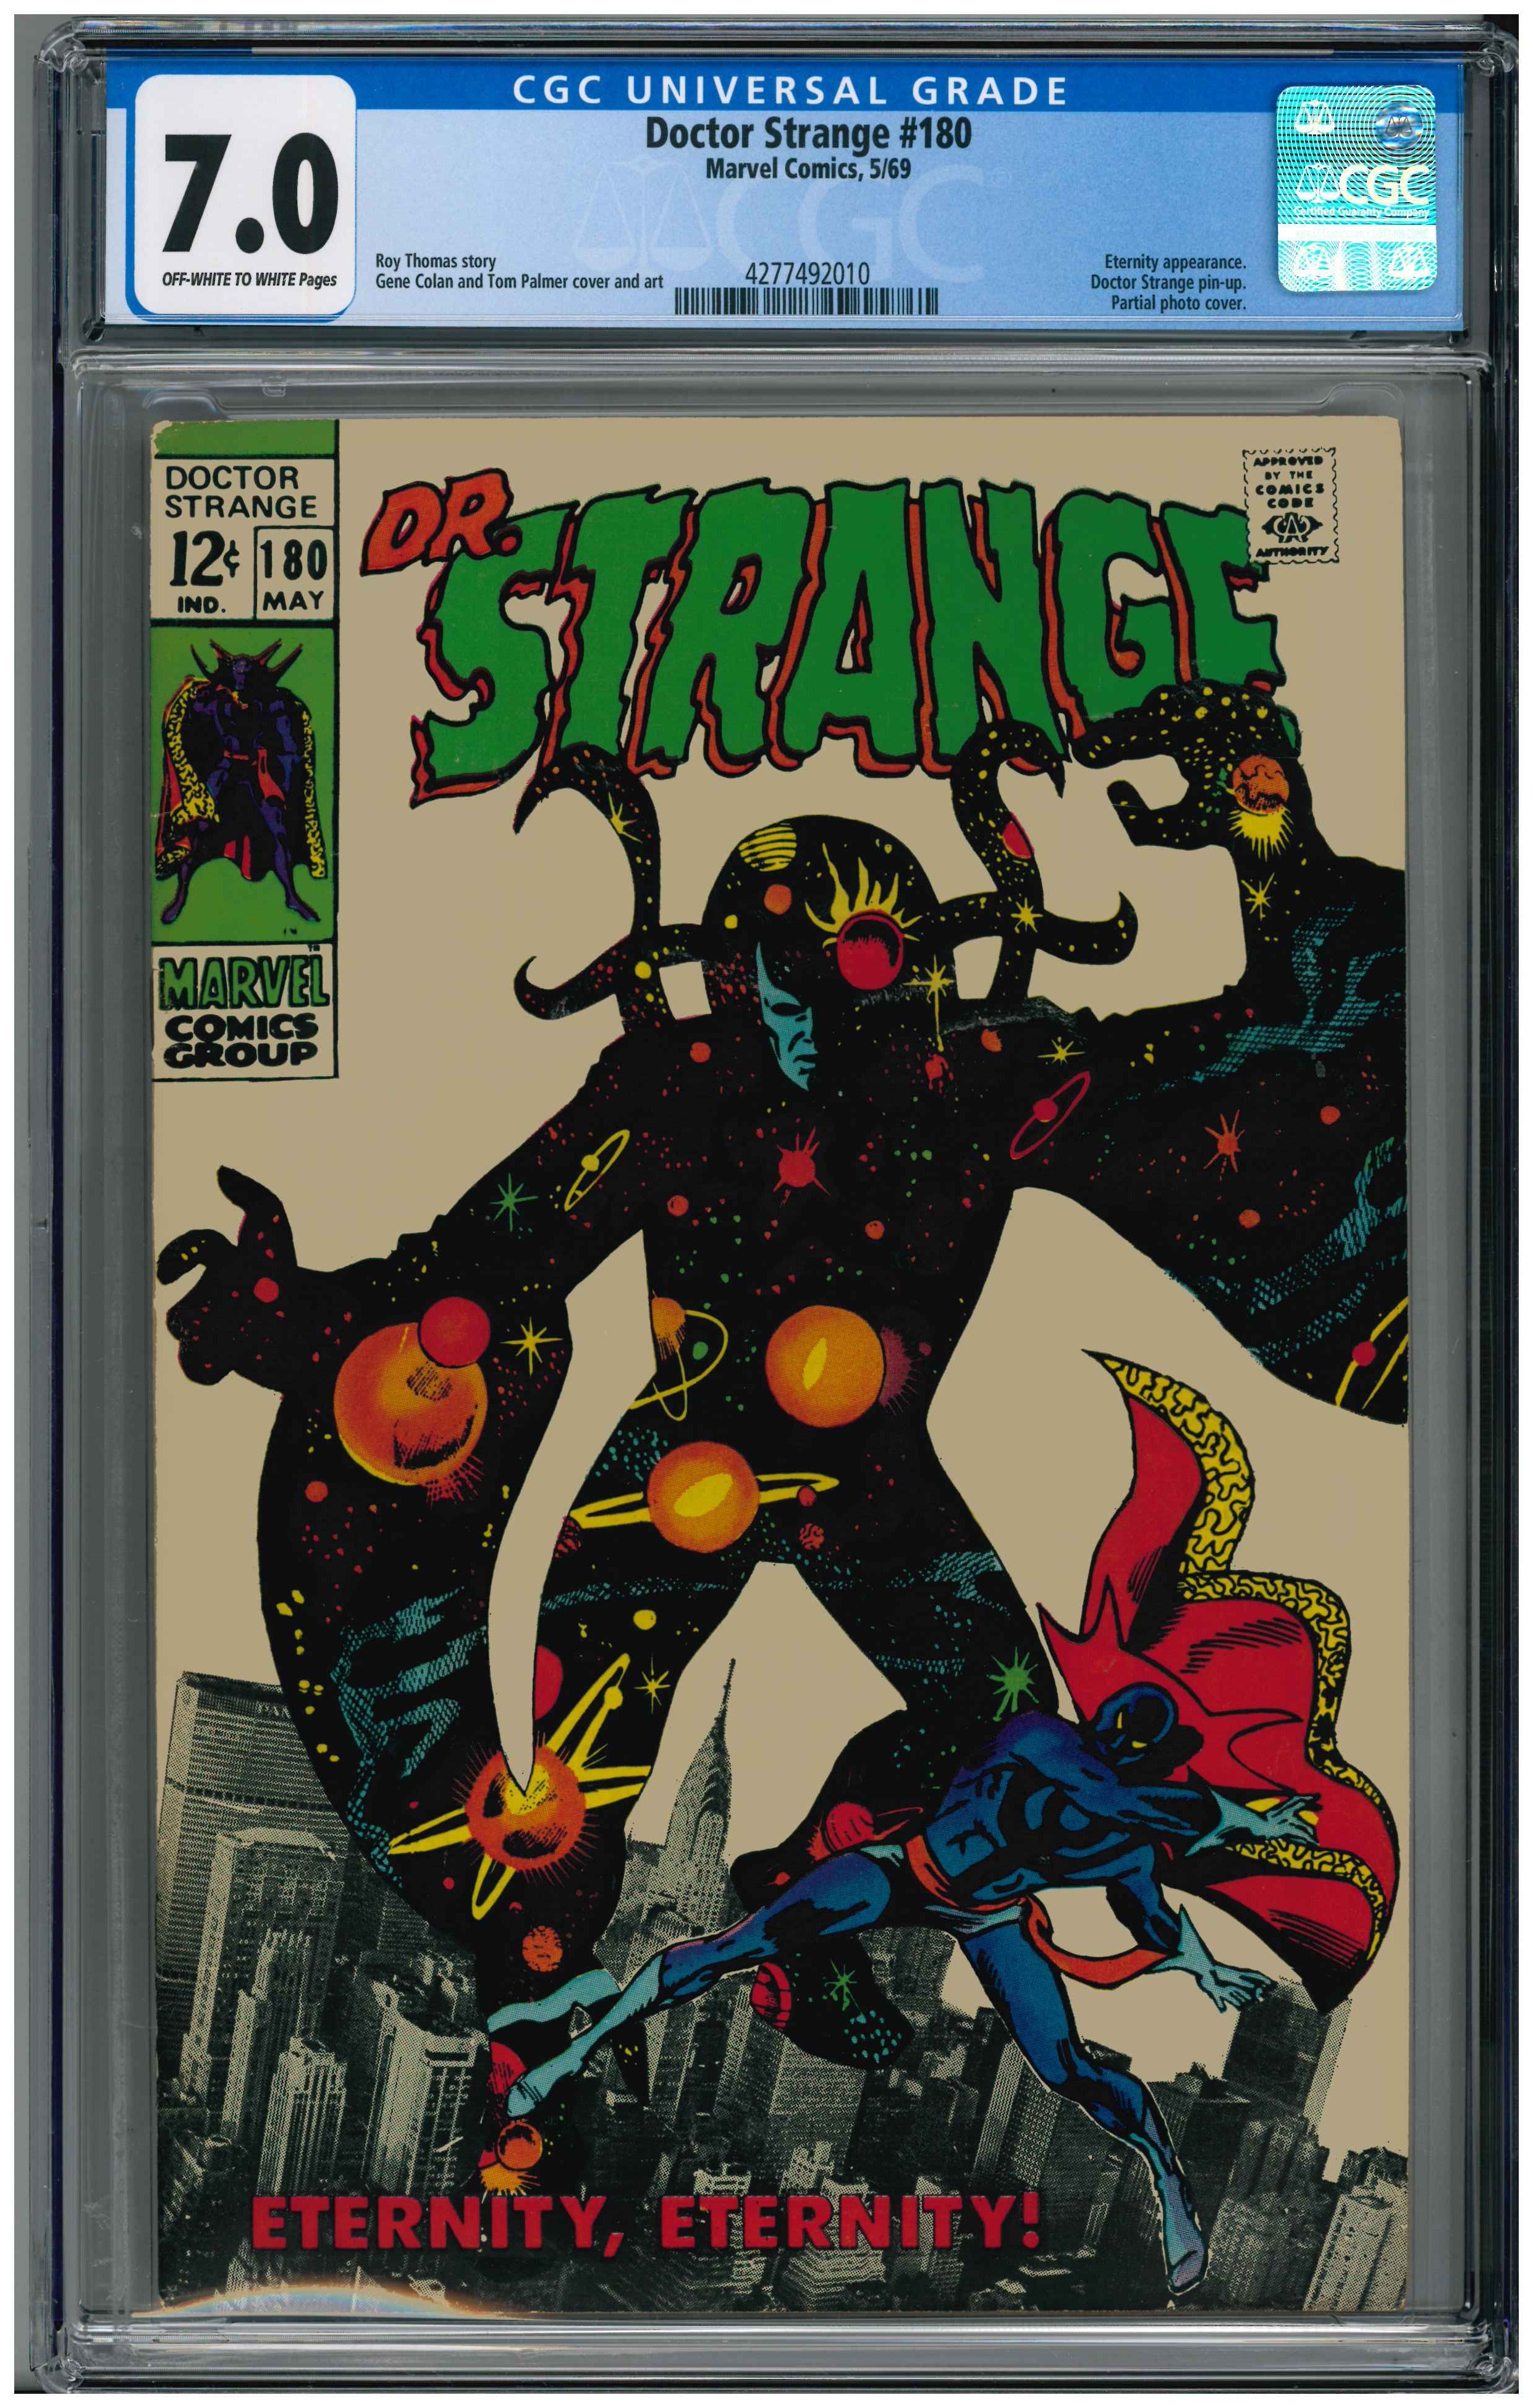 Doctor Strange #180